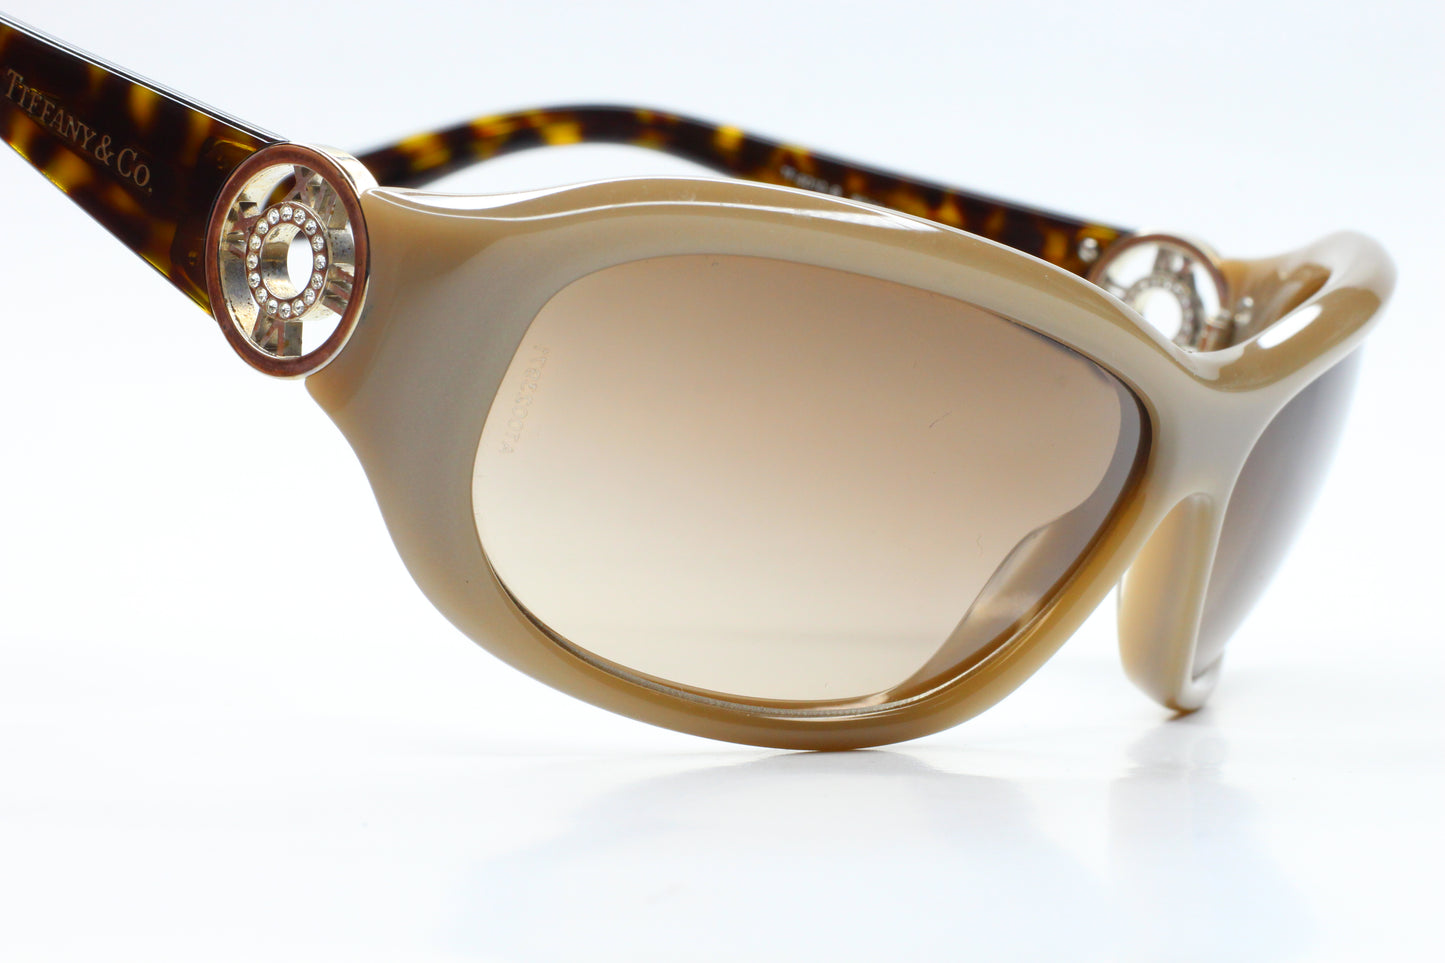 Tiffany & Co TF4010B 80403B Ivory Dark Havana Italy Sunglasses